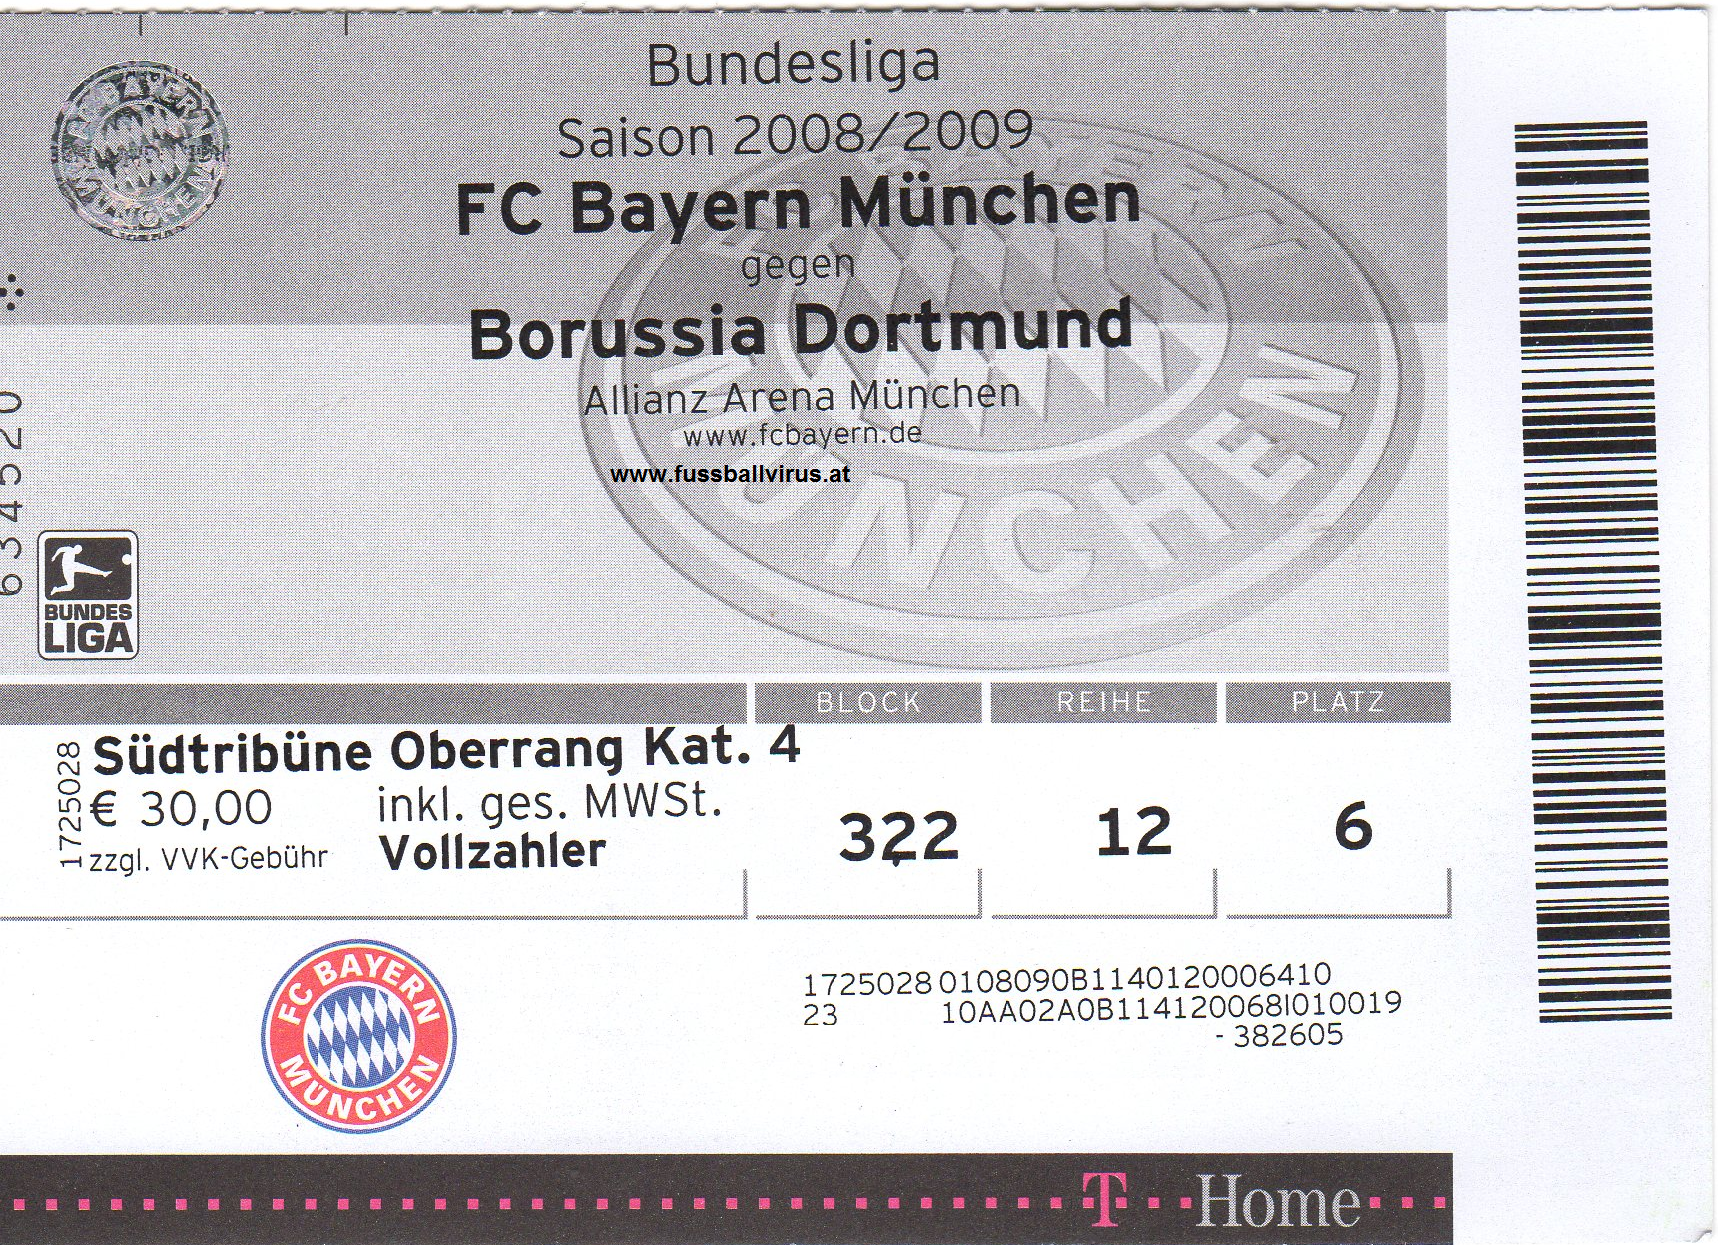 8.2. FC Bayern München - Borussia Dortmund